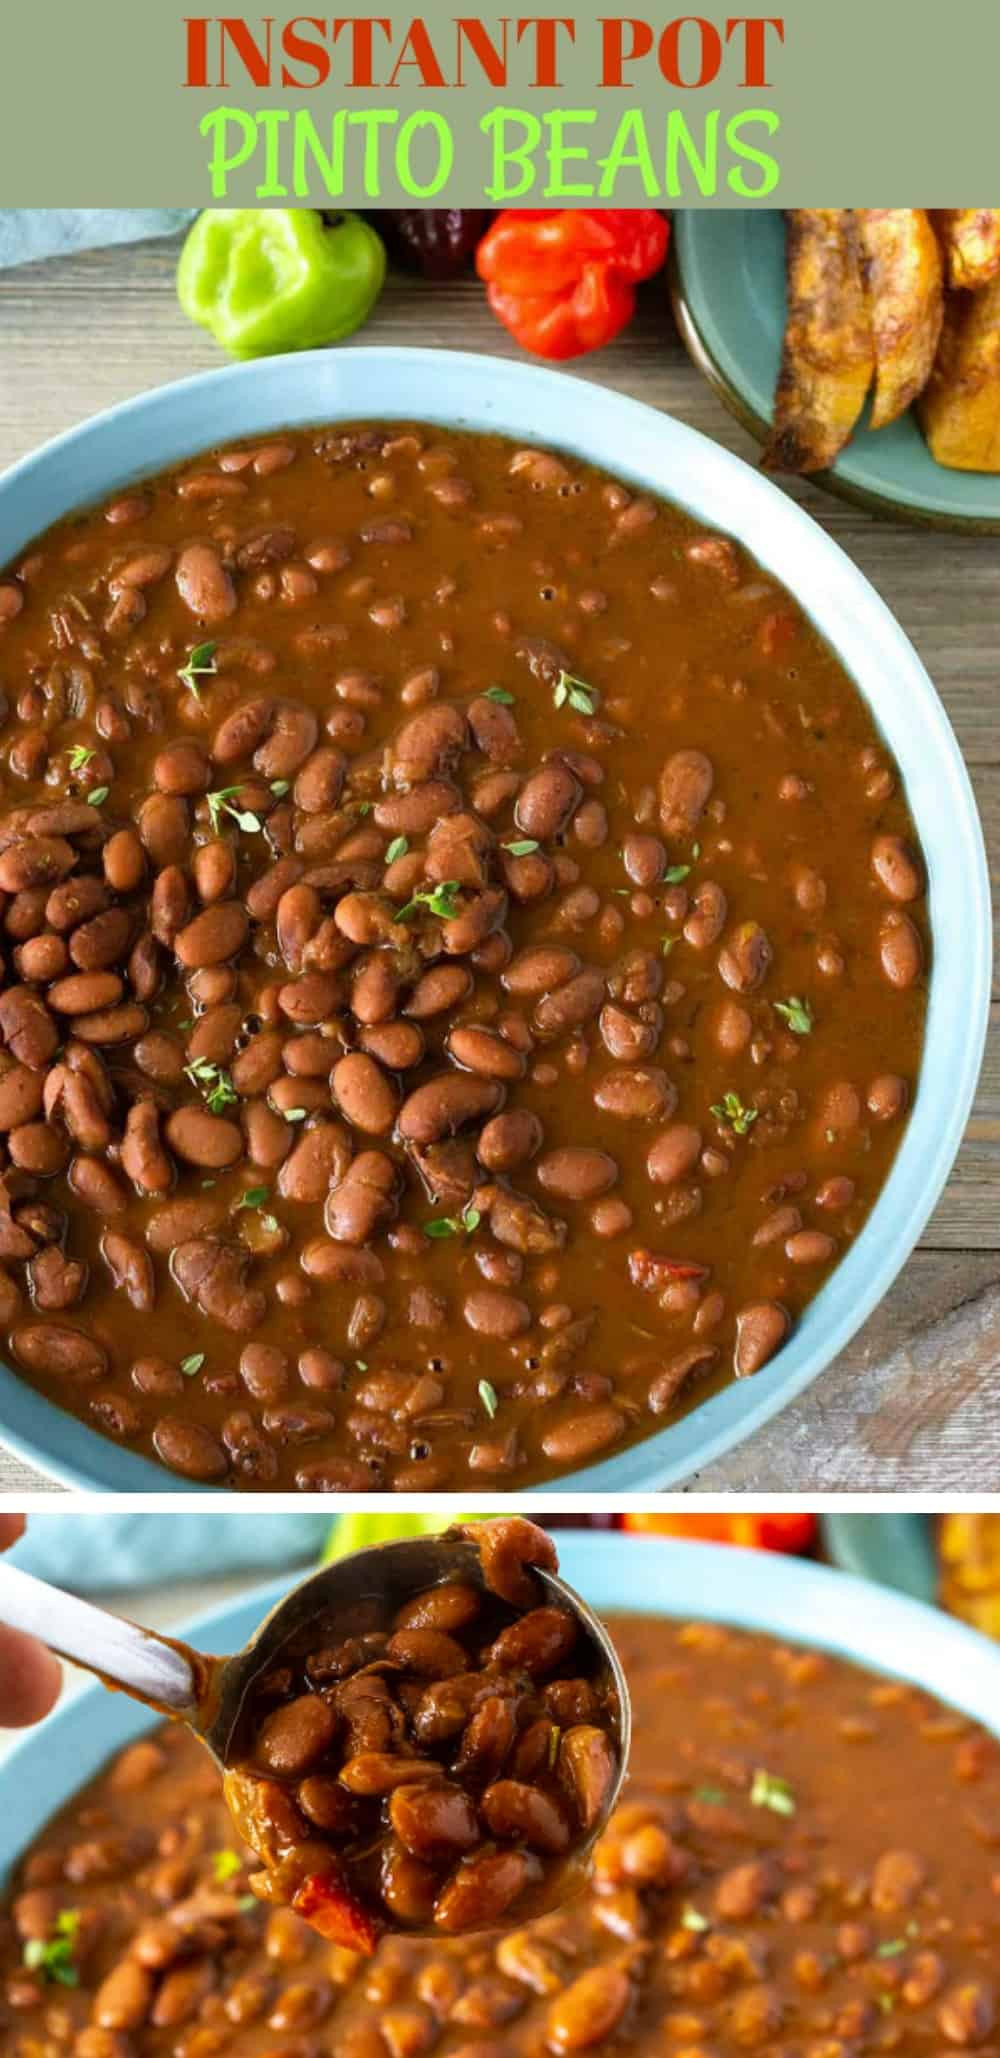 Instant Pot Bean Recipes
 Instant Pot Pinto Beans Healthier Steps